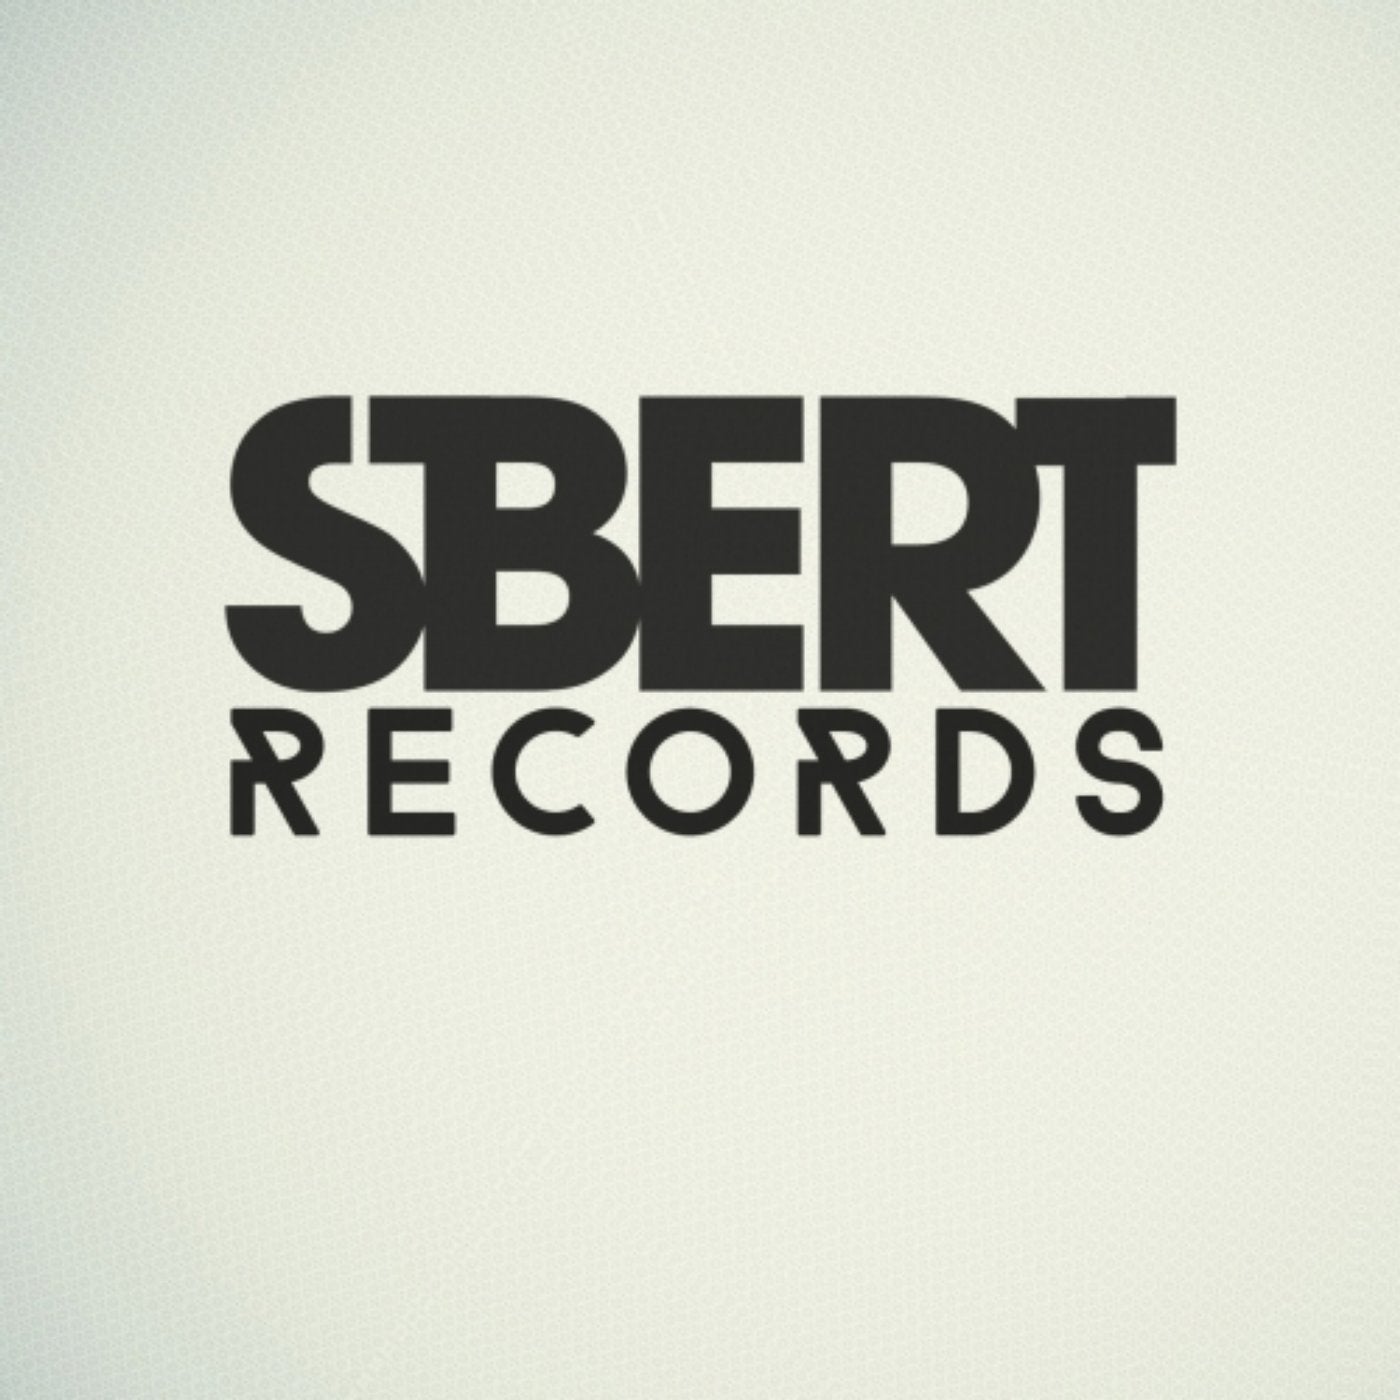 Sbert. Dani Sbert, Diego Straube - estafa (Original Mix). Enchance. Sbert работа.